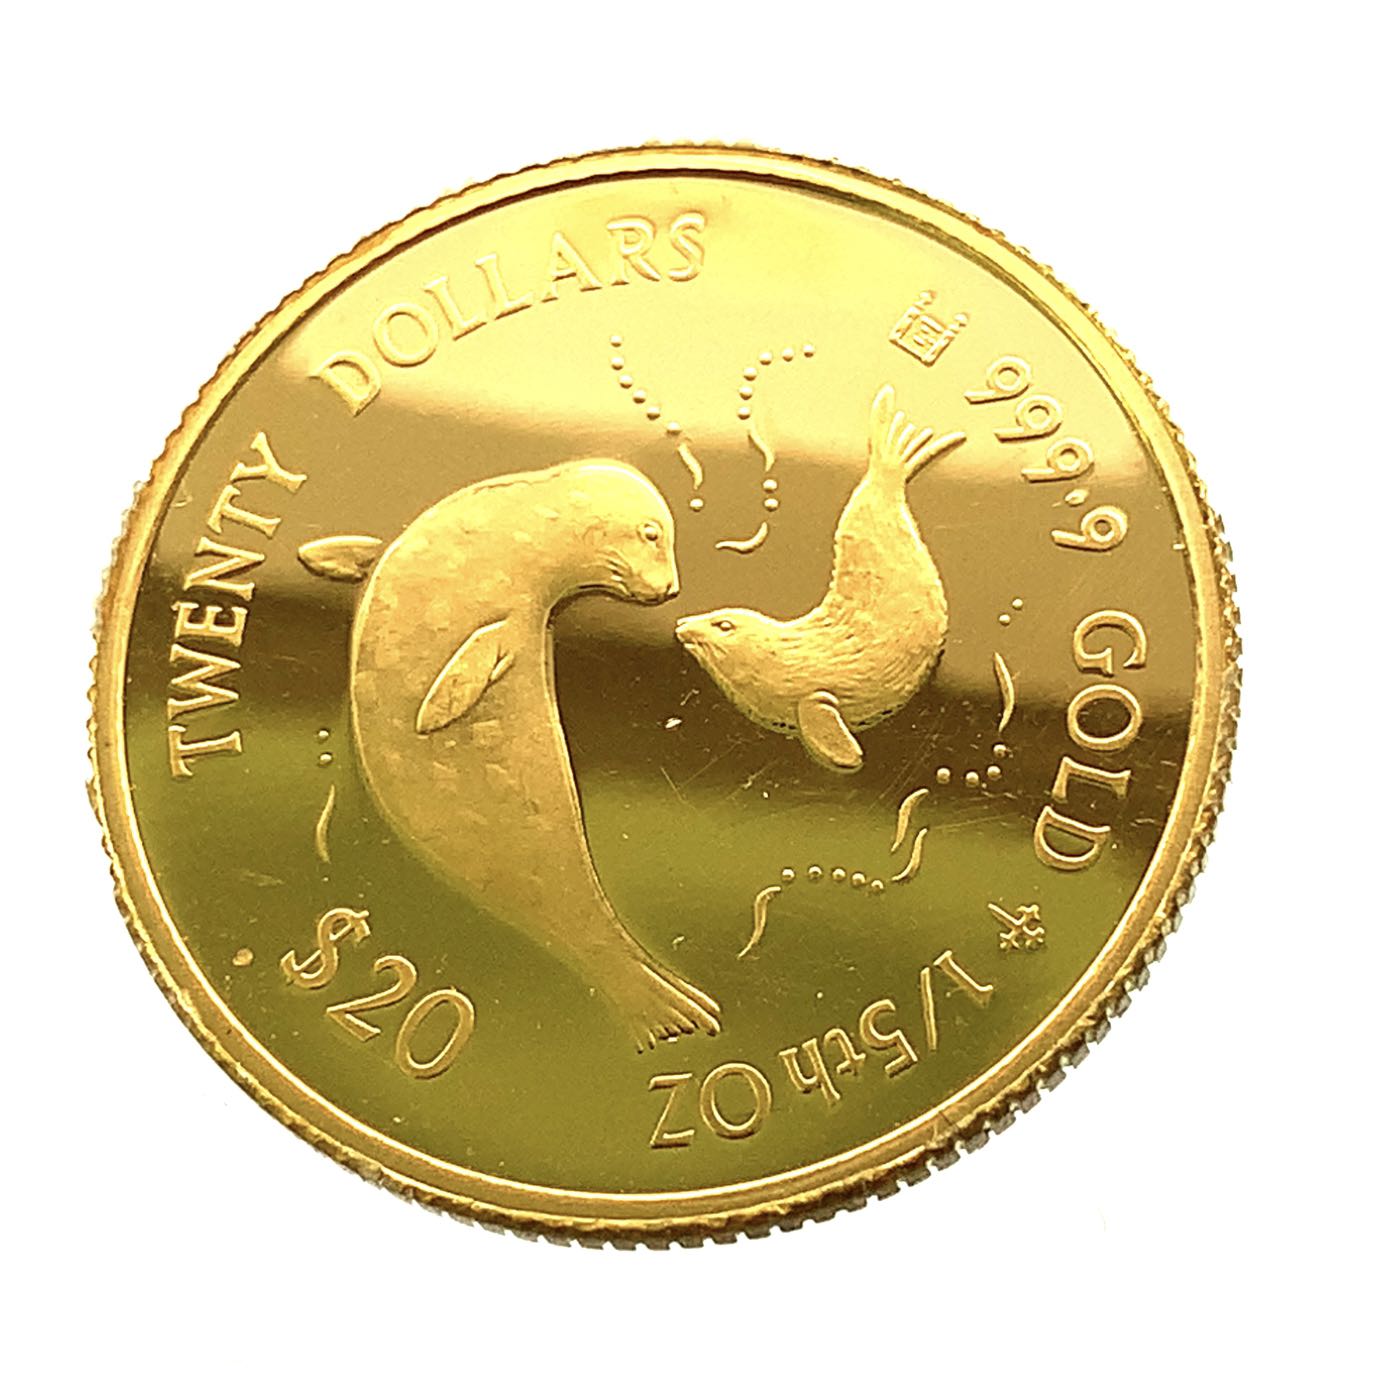 イルカ金貨 エリザベス女王 クック諸島 1997年 1/5オンス 6.2g 24金 純金 イエローゴールド コレクション Gold 美品